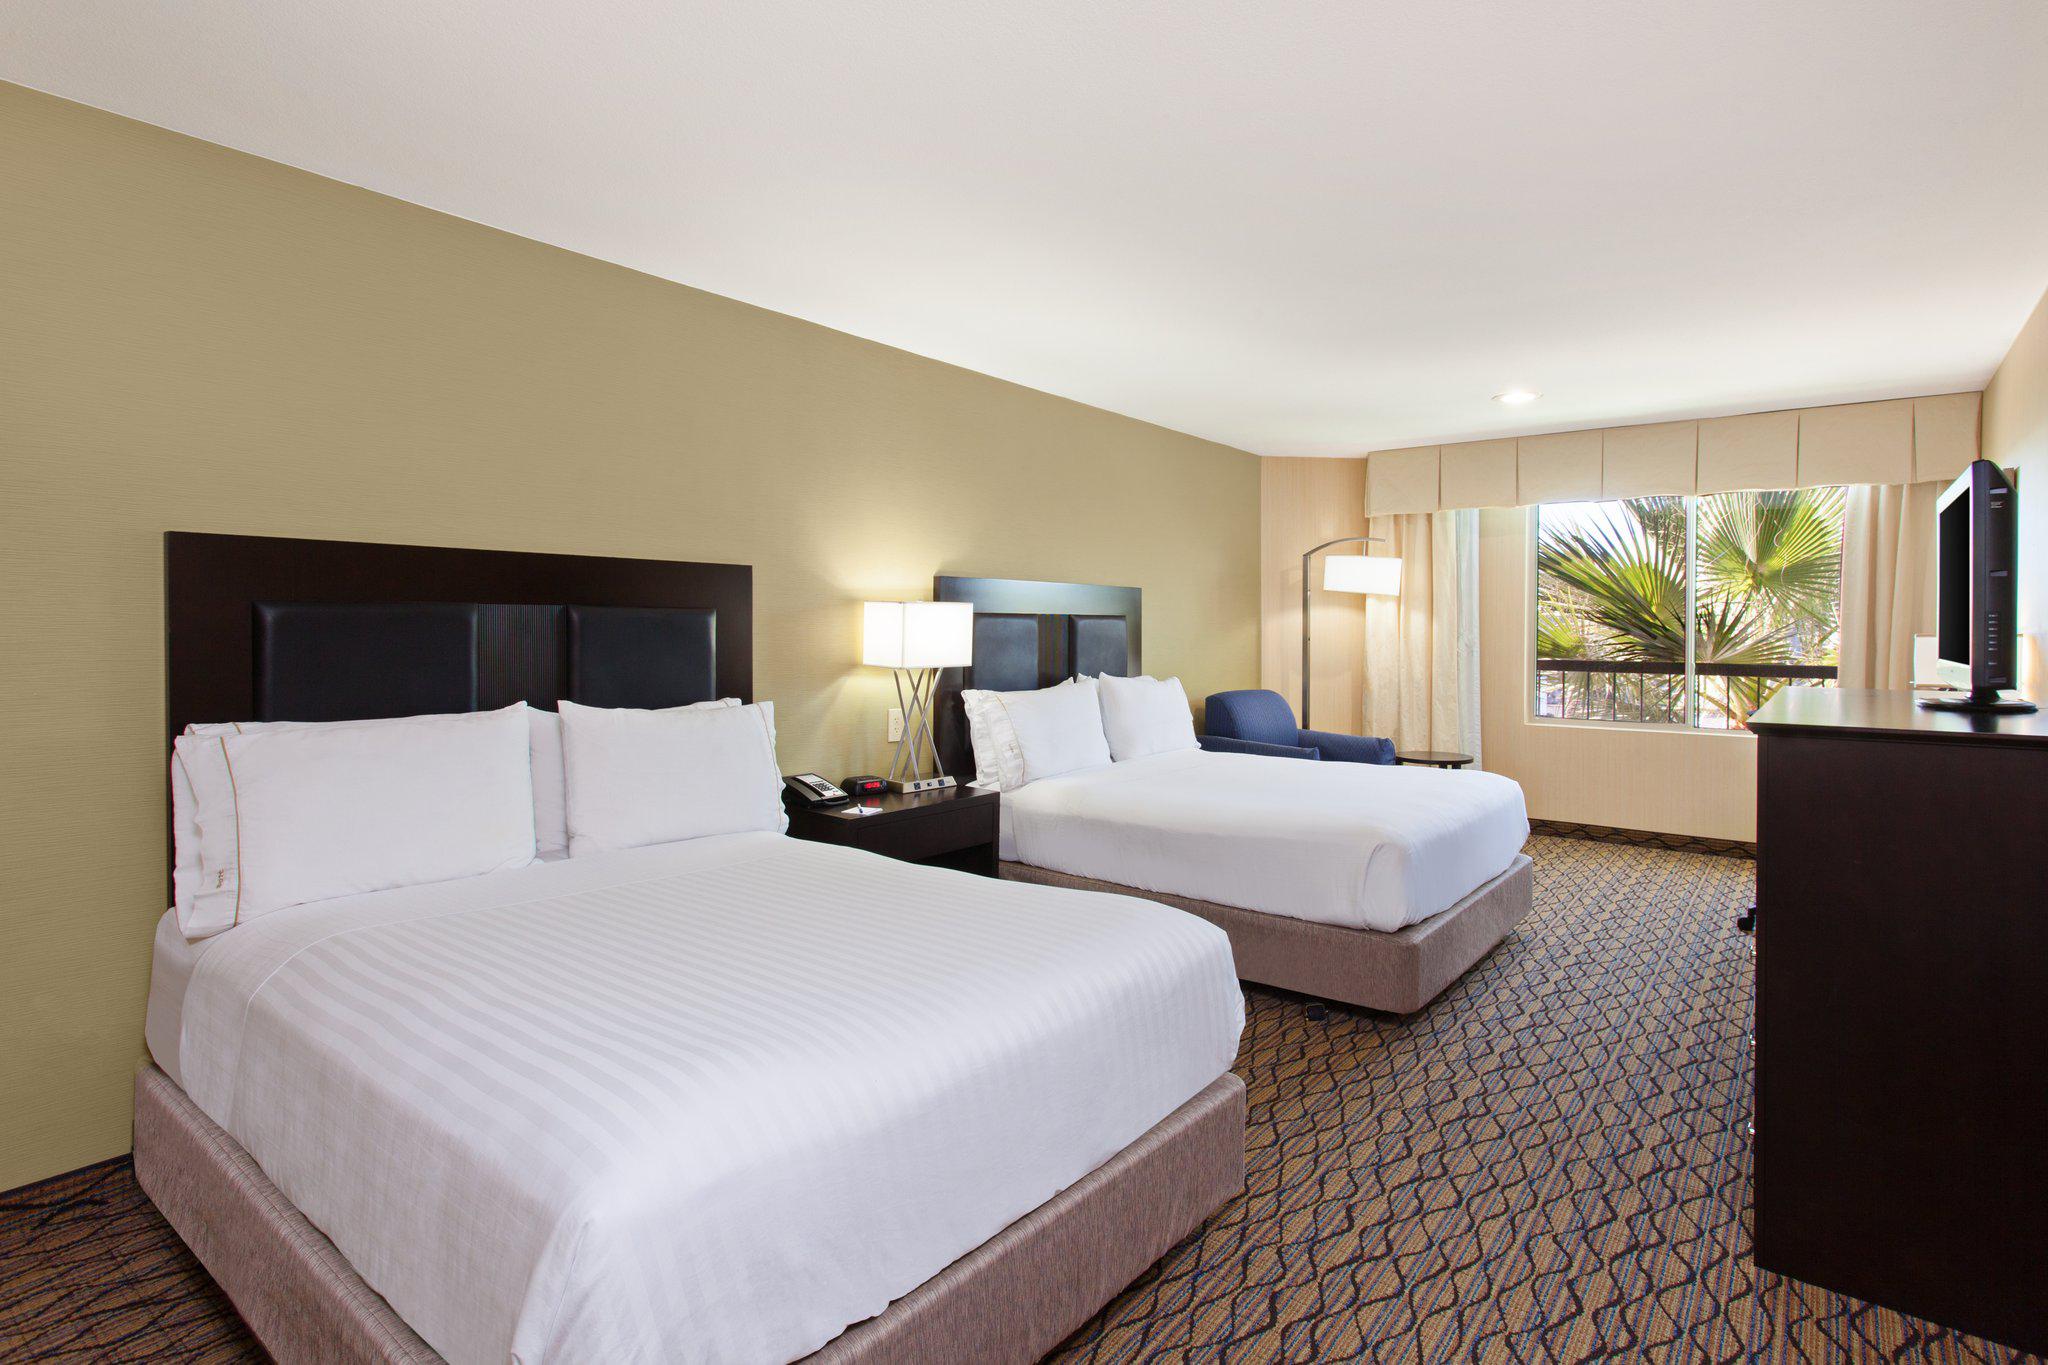 Holiday Inn Express Newport Beach, an IHG Hotel Newport Beach (949)722-2999